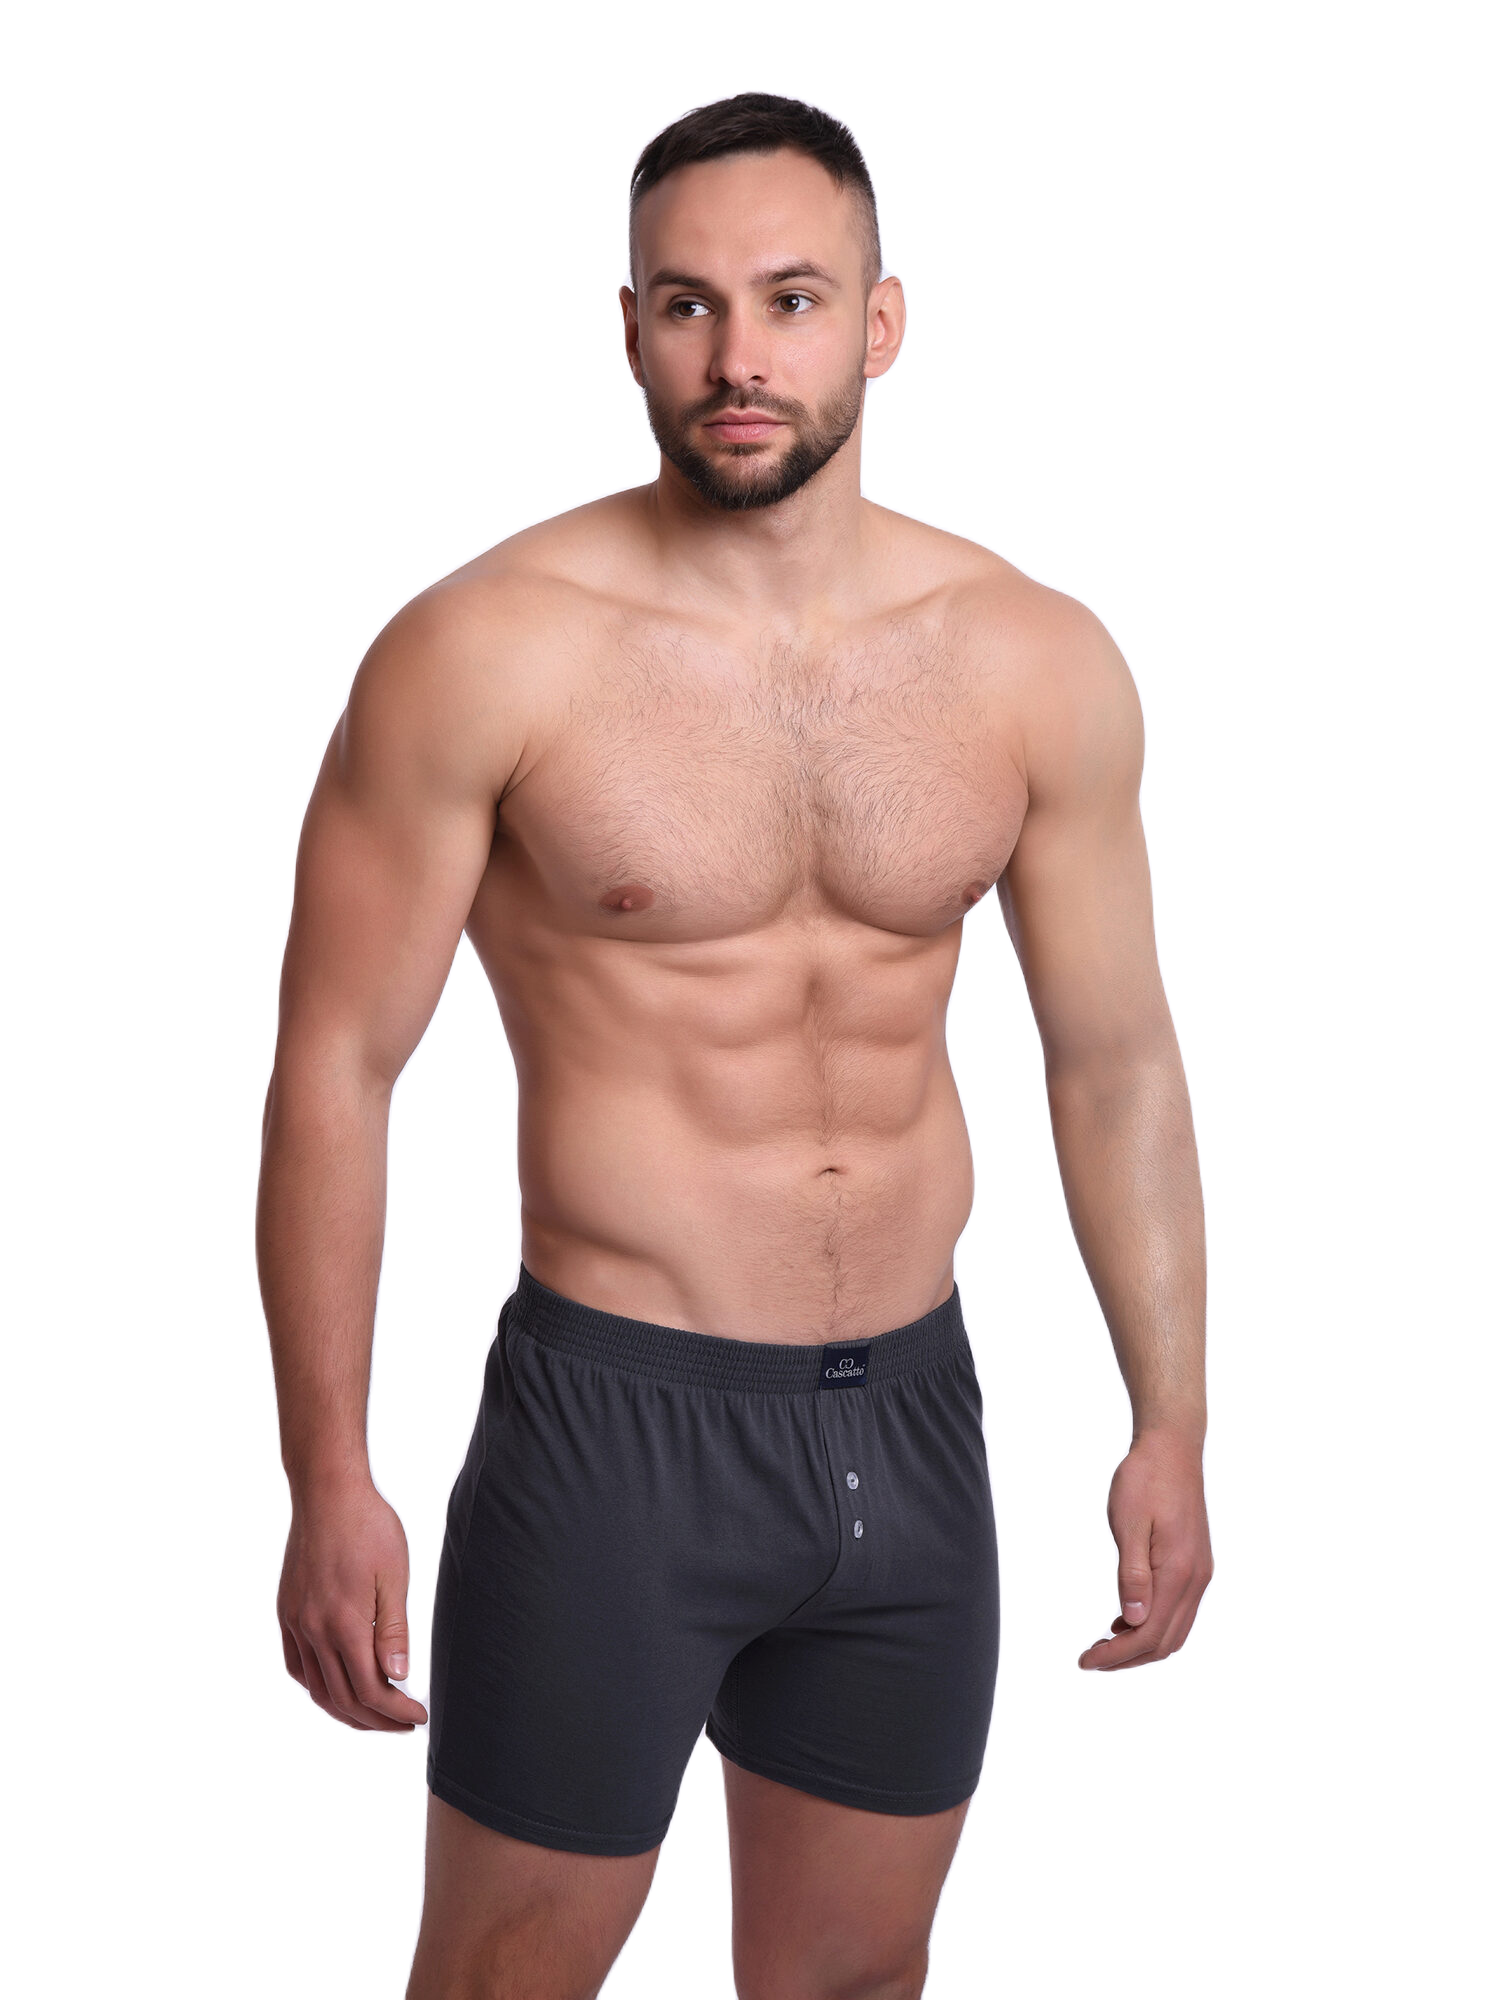 Трусы Cascatto шорты для мужчин, тёмно-серый, размер 2XL, MSH1803